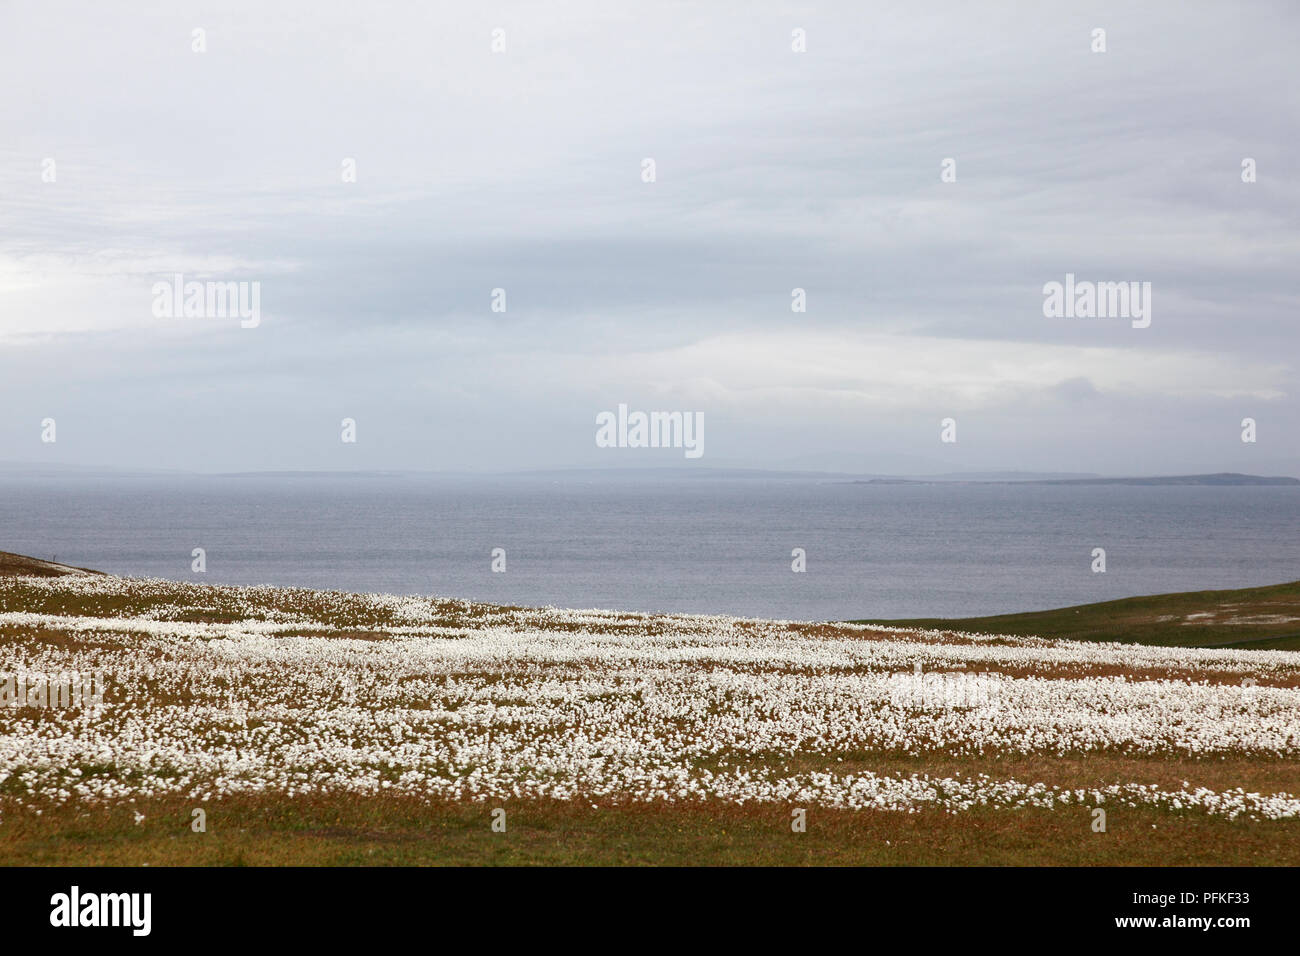 Bog coton, également connu sous le nom de linaigrettes, commune sur Duncansby Head, Caithness, en Écosse à l'ensemble du Pentland Firth à Orkney Banque D'Images